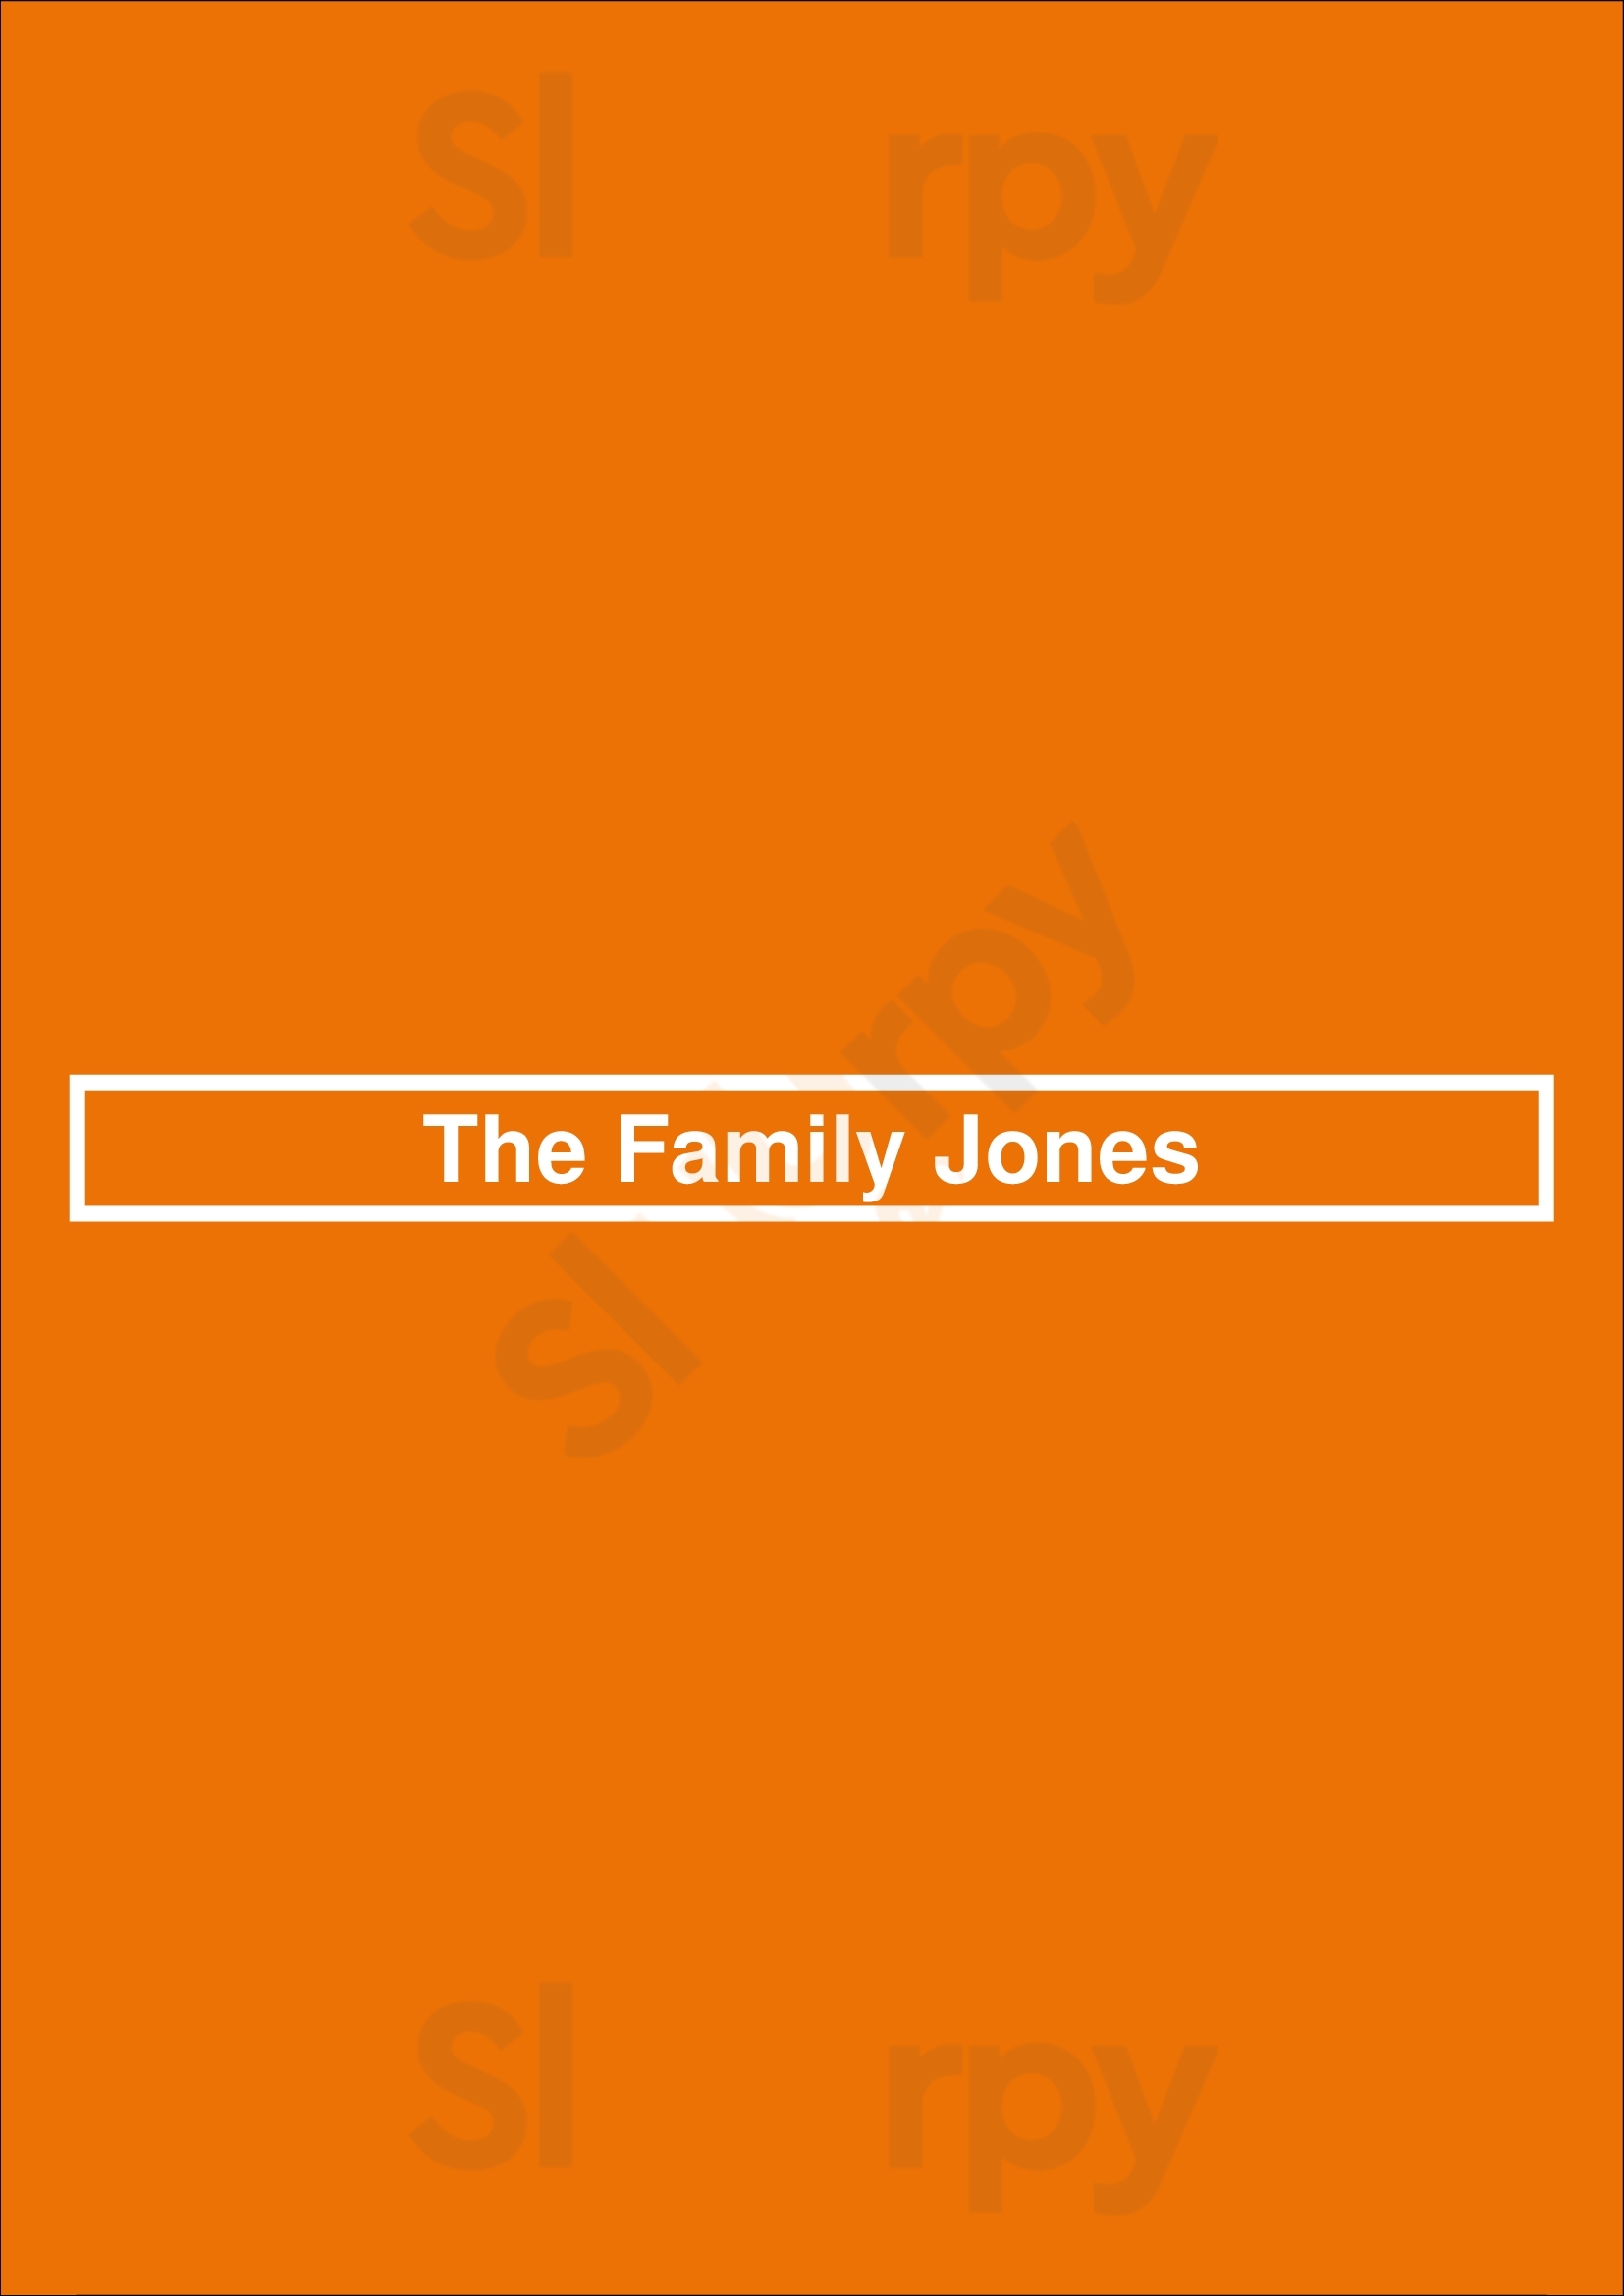 The Family Jones Denver Menu - 1